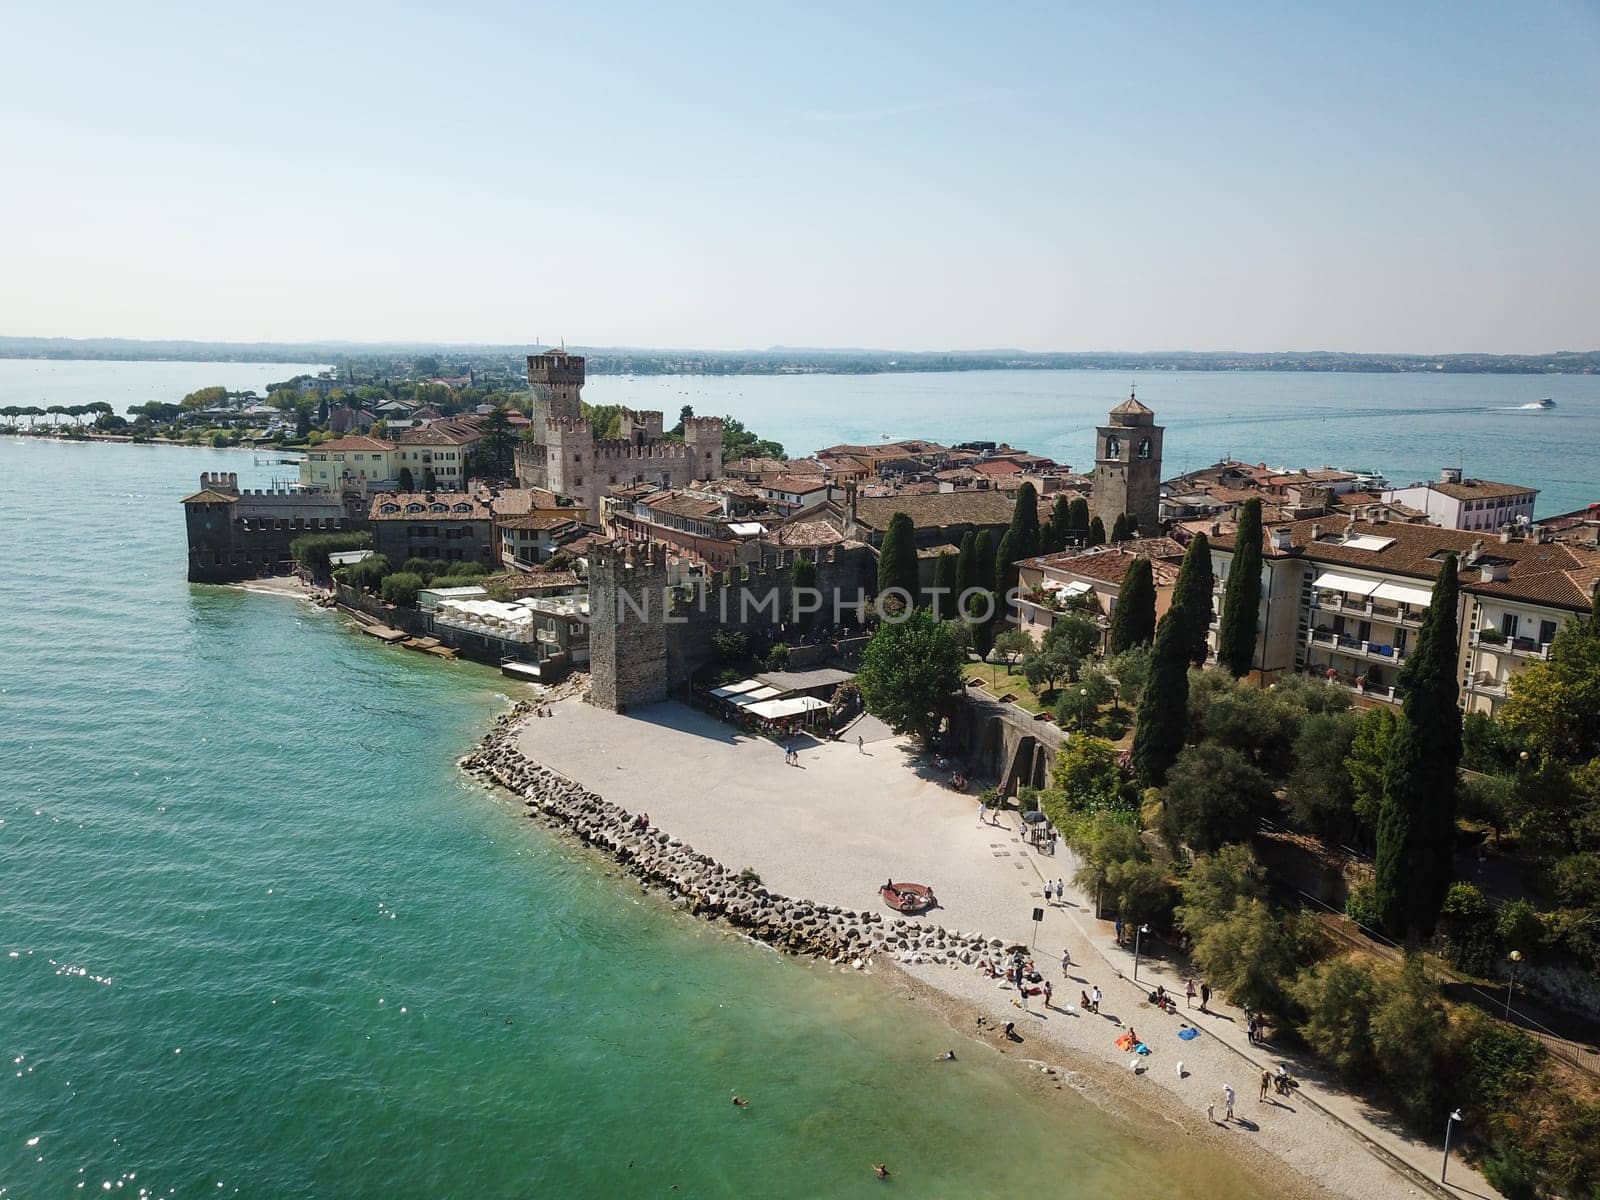 Scallgero Castle Aerial shots Sirmione Lake Garda Italy. by WeWander